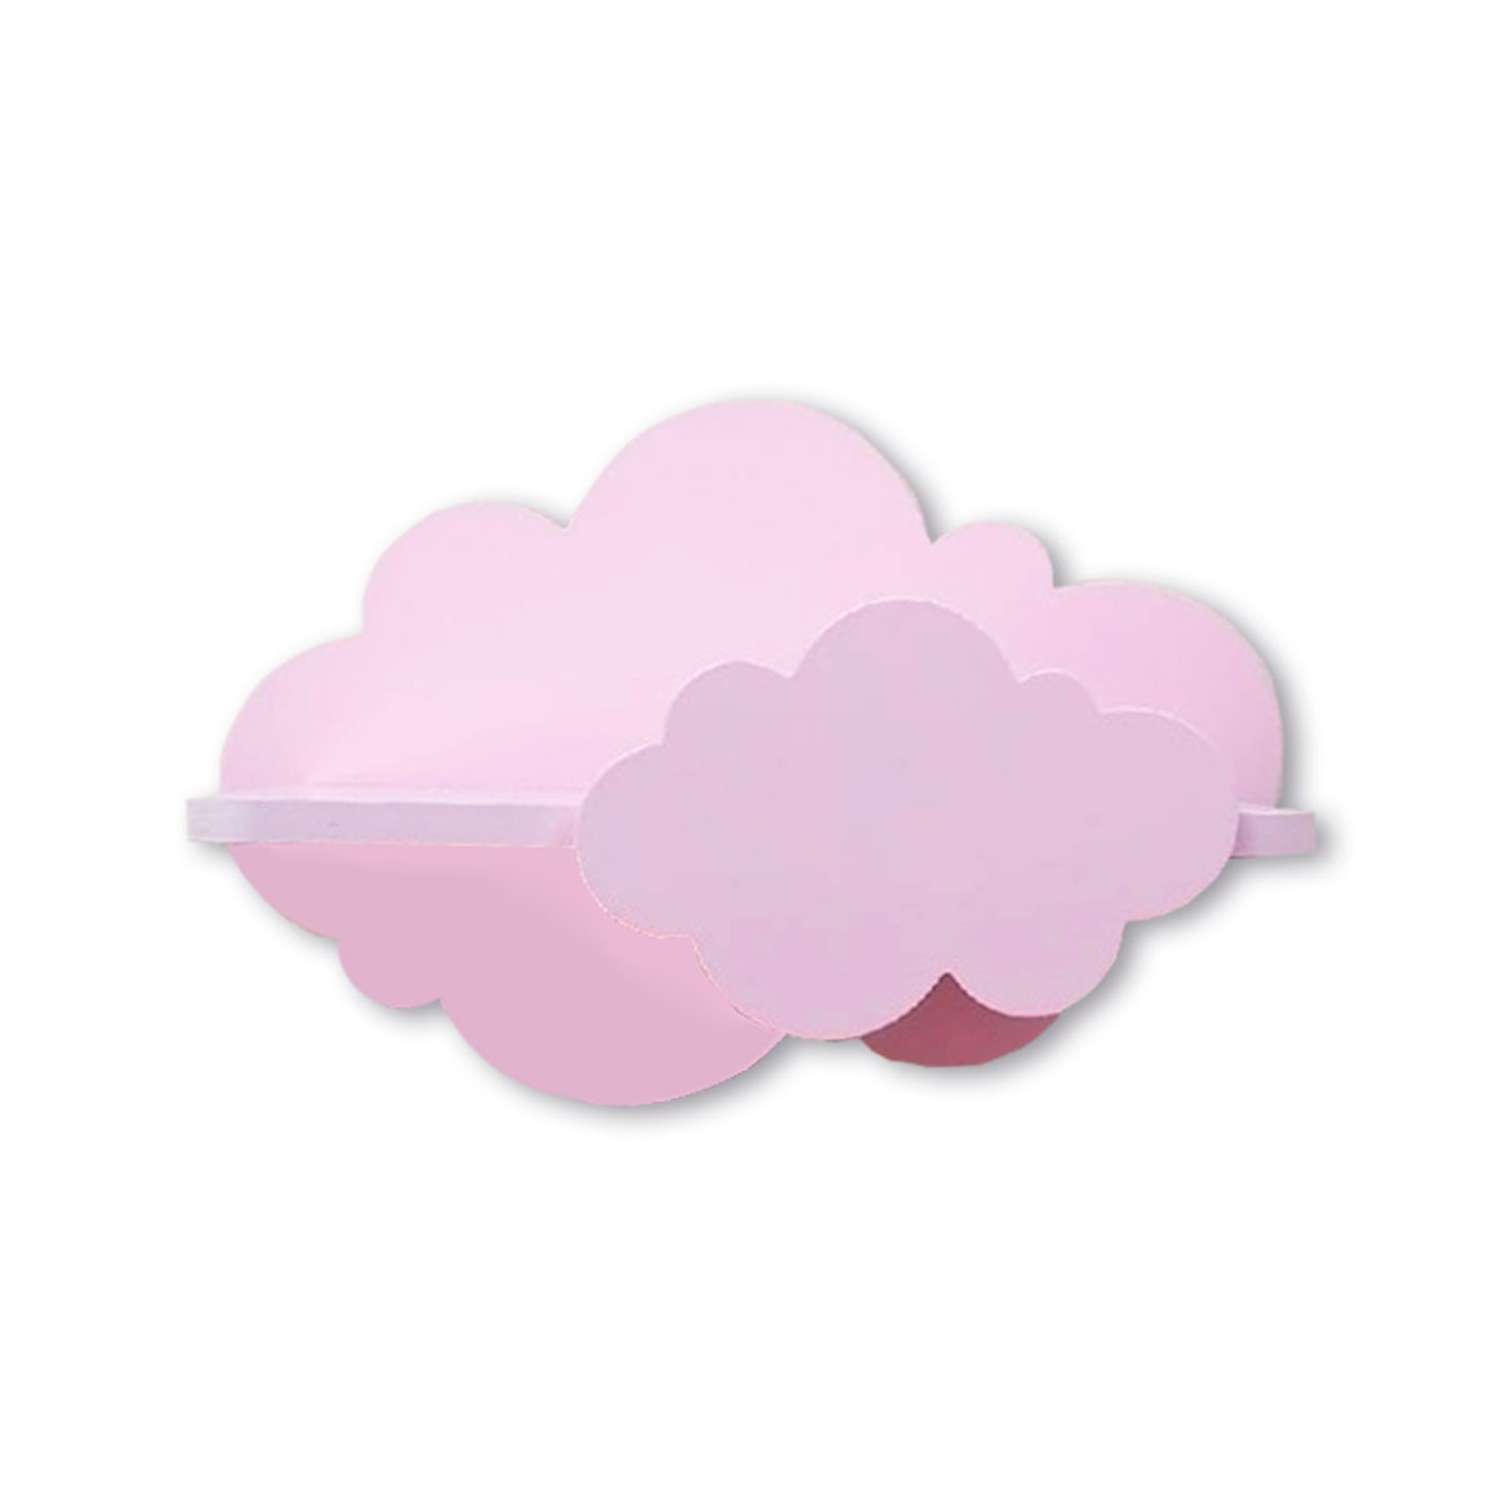 Полки для детской Pema kids набор облака розовые 2 шт МДФ - фото 1